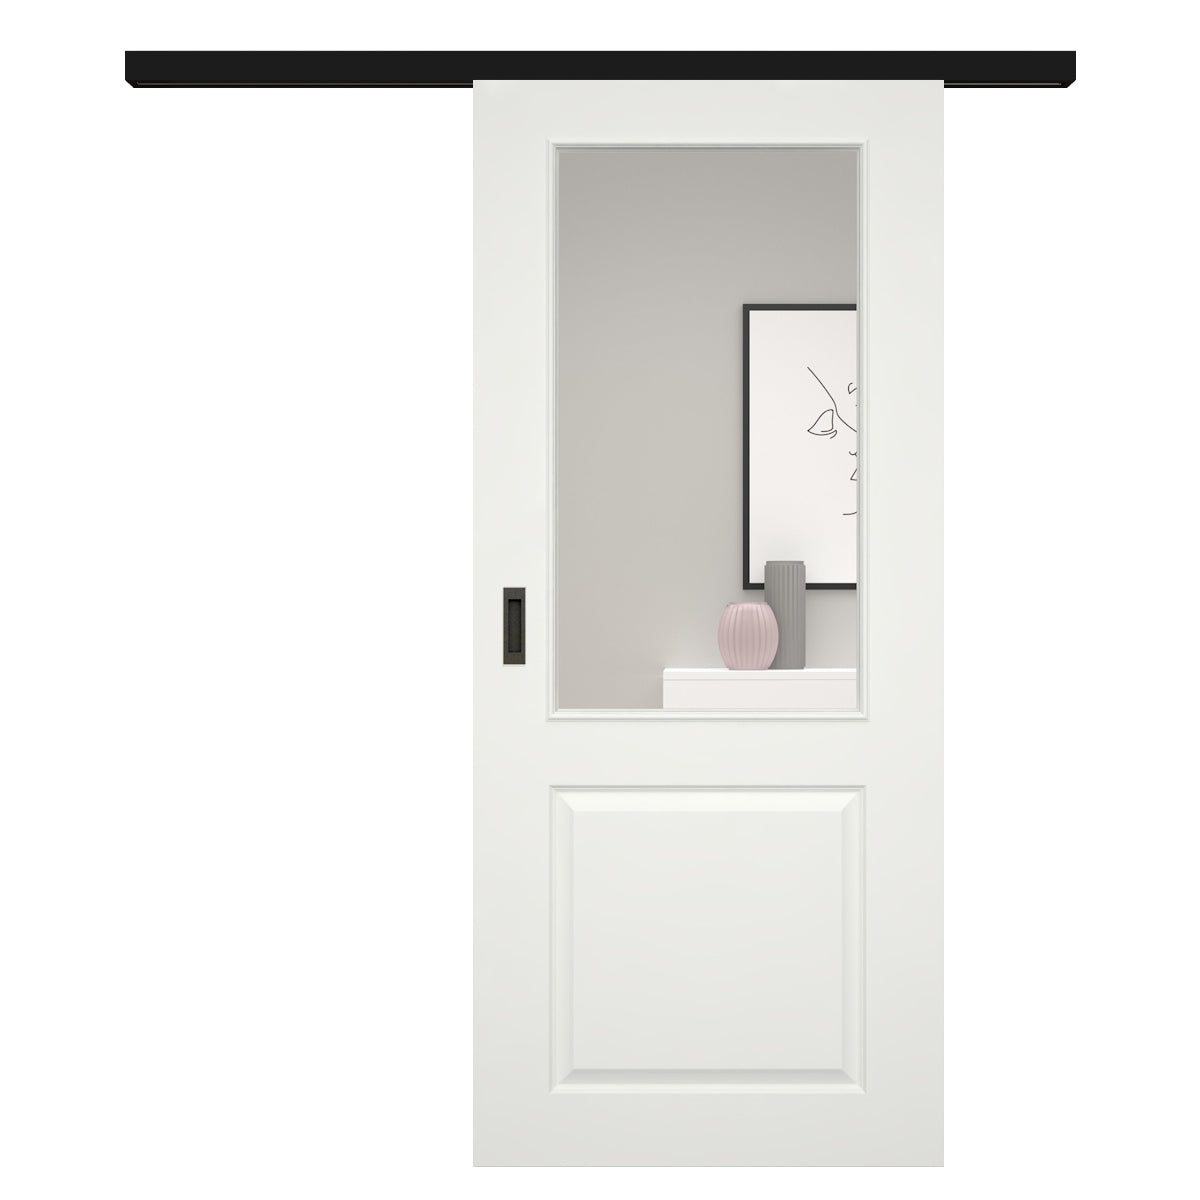 Schiebetür für Set mit schwarzem Laufkasten soft-weiß Stiltür mit 2 Kassetten und Lichtausschnitt - Modell Stiltür K21LA